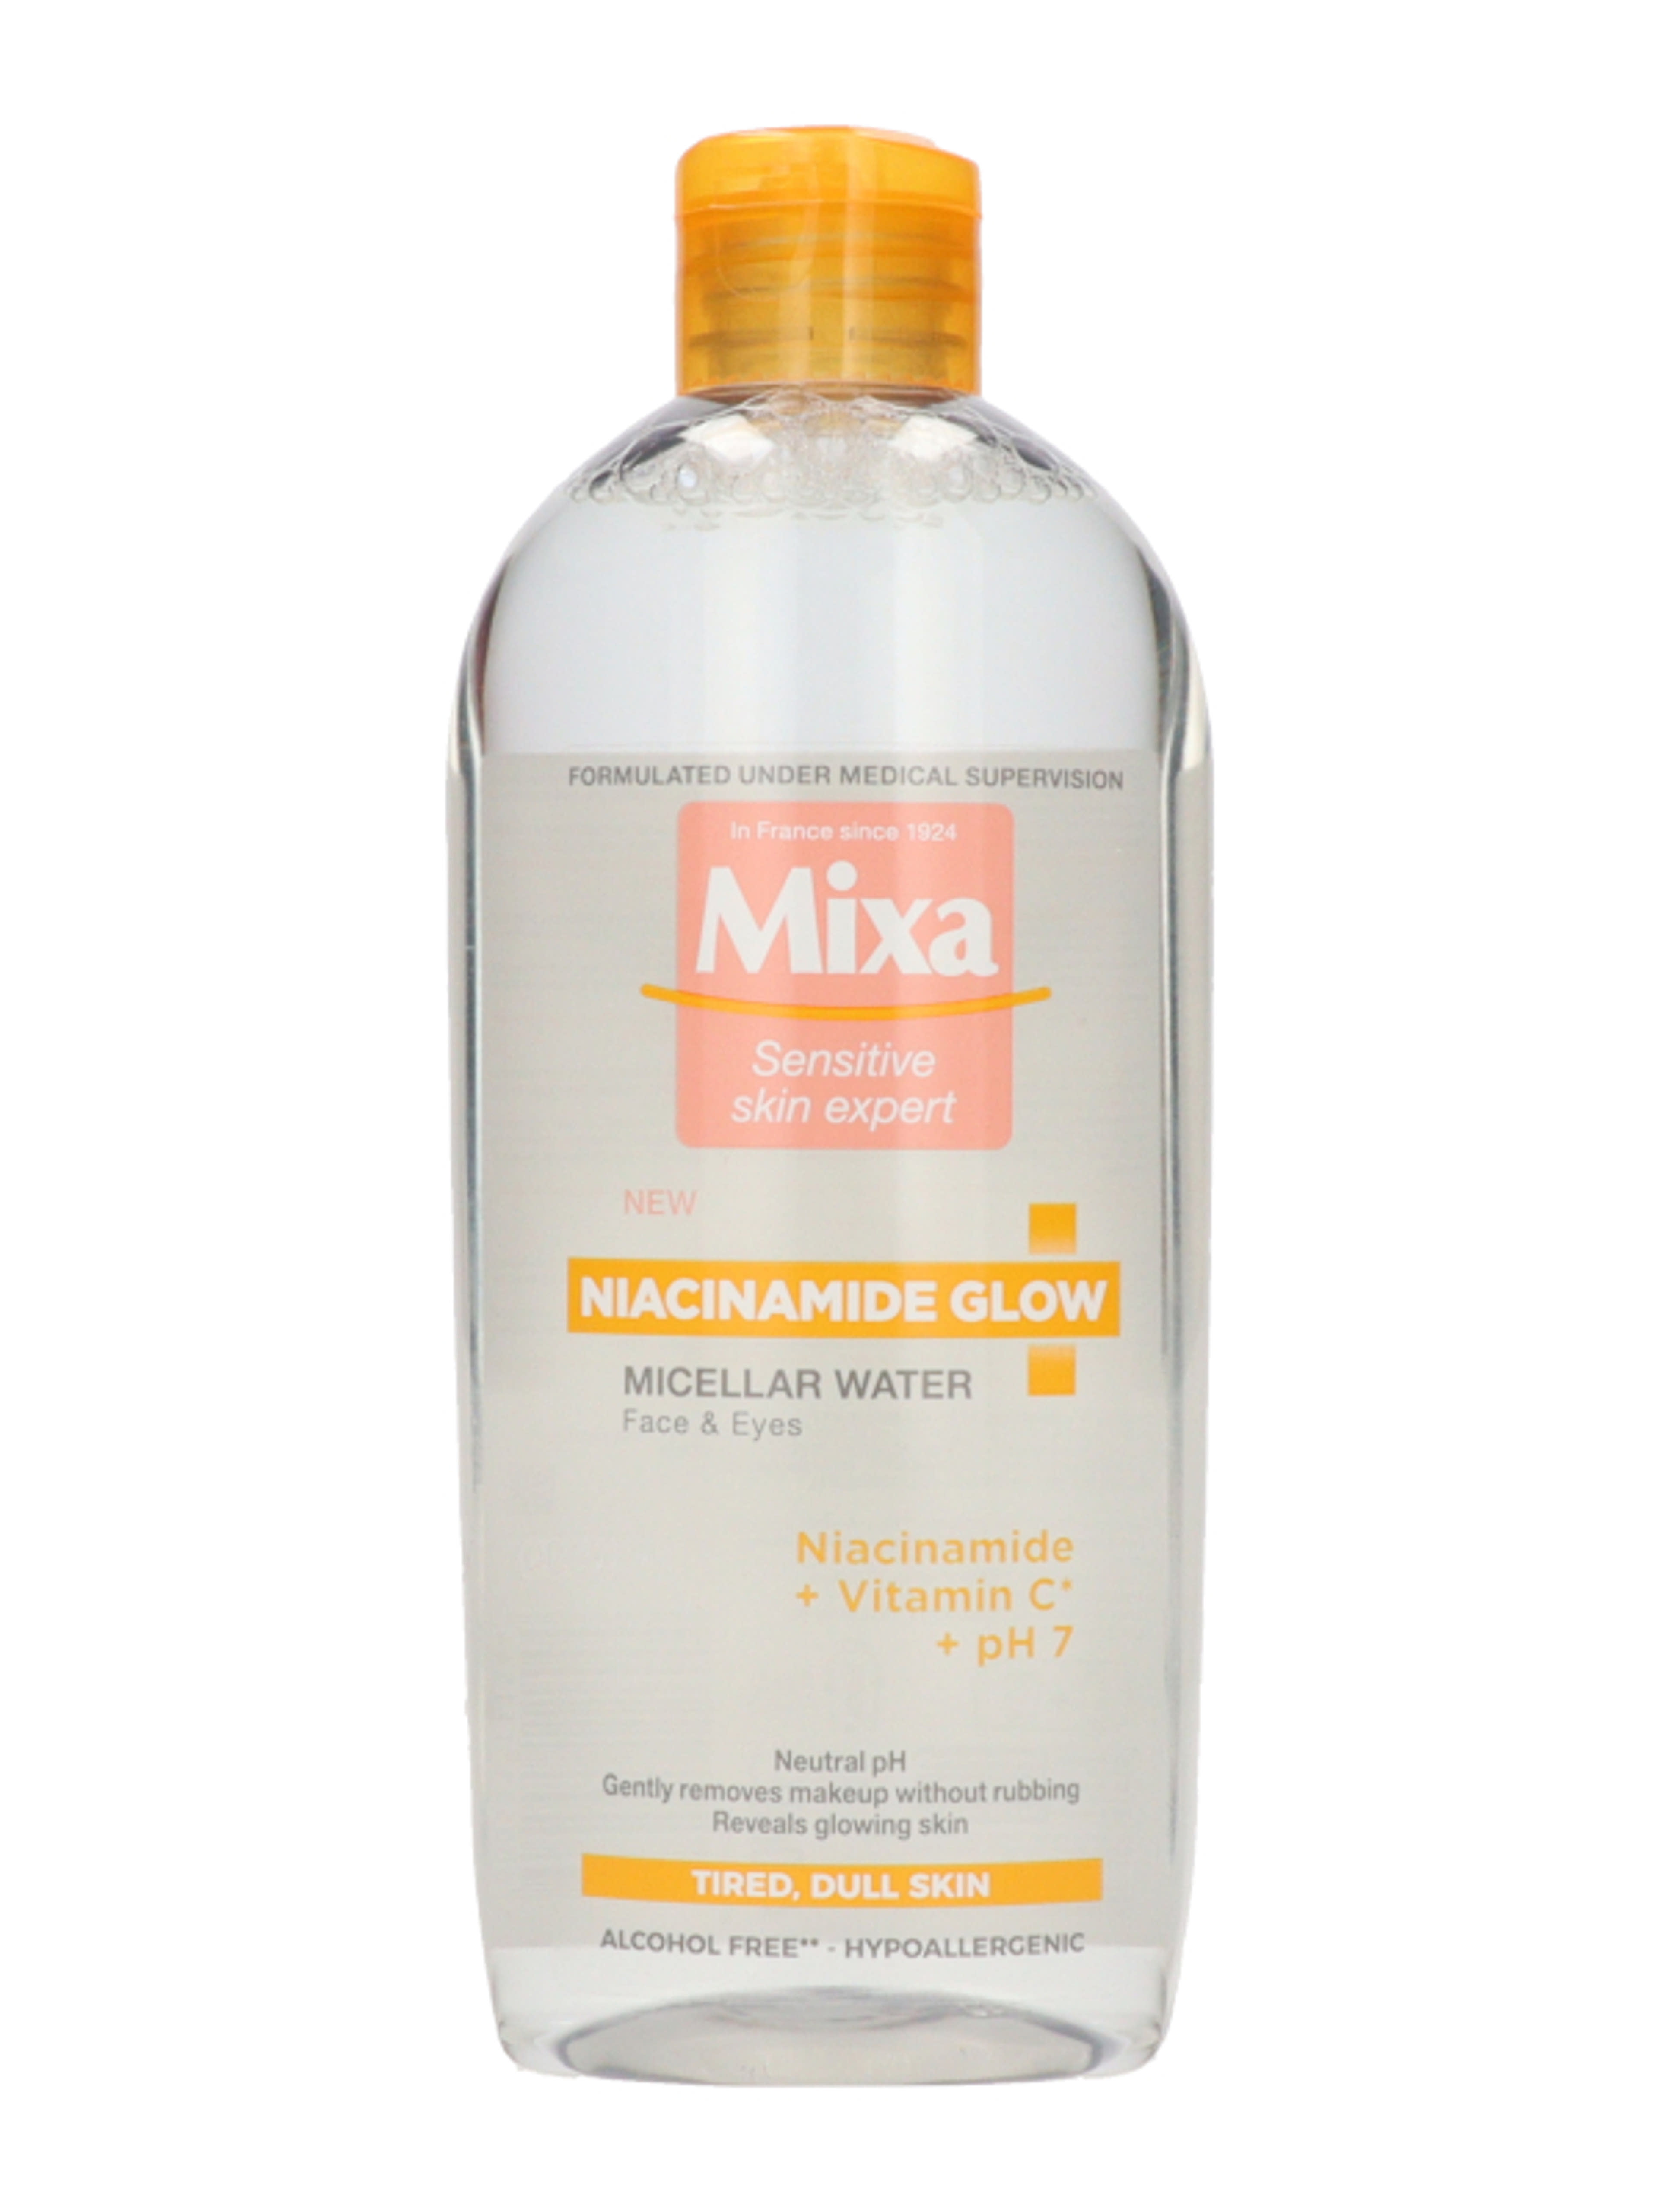 Mixa Niacinamide Glow micellás víz - 400 ml-4